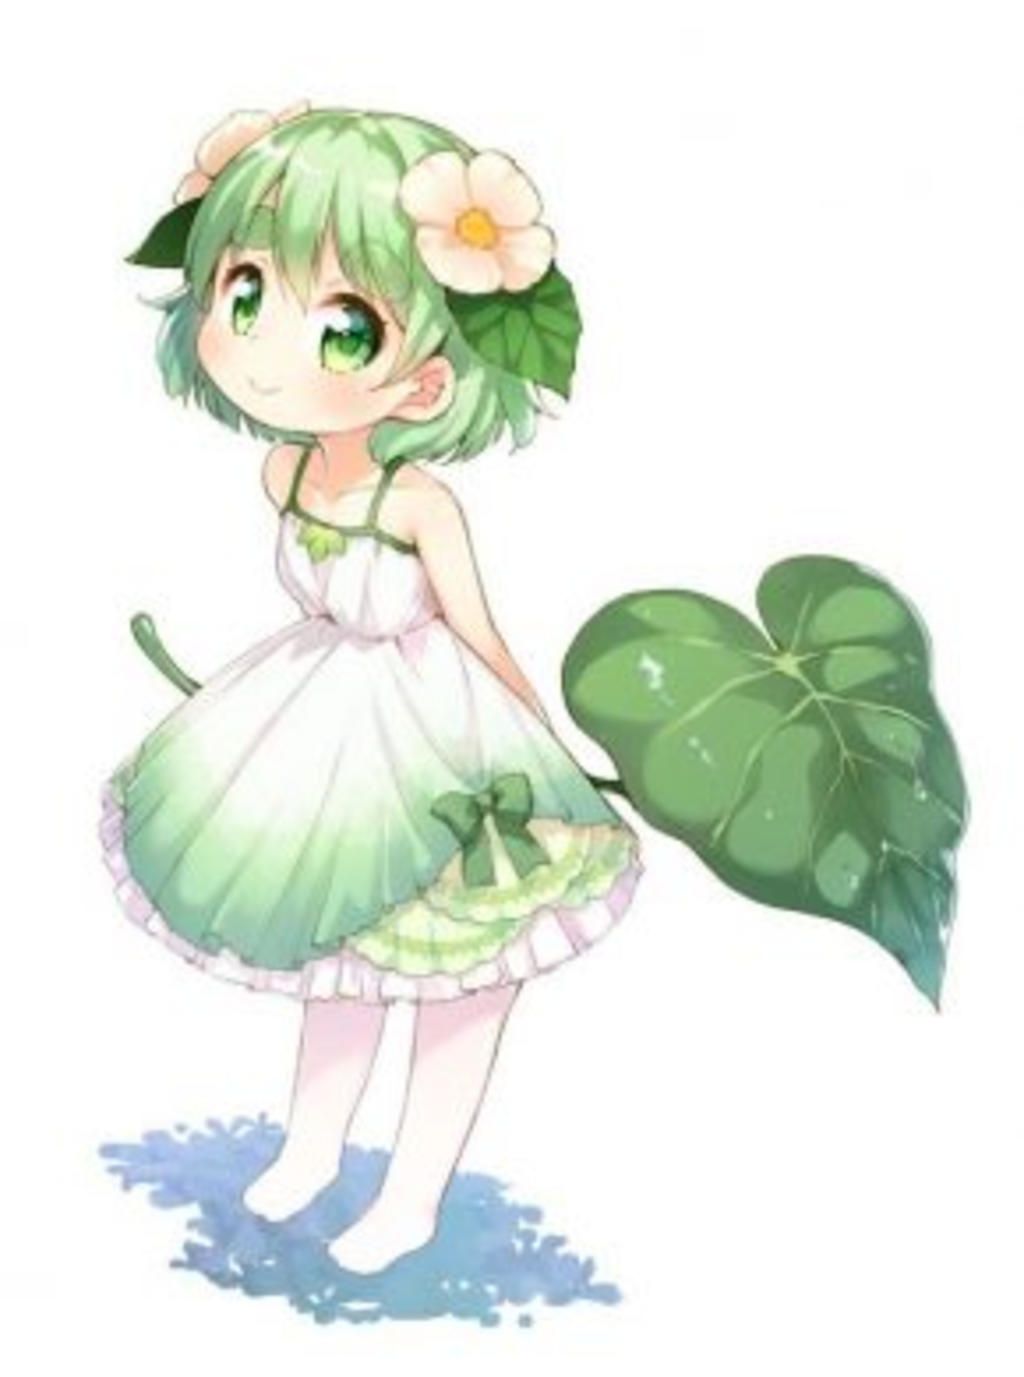 Top 99 hình ảnh cute anime chibi xanh lá đẹp nhất hiện nay